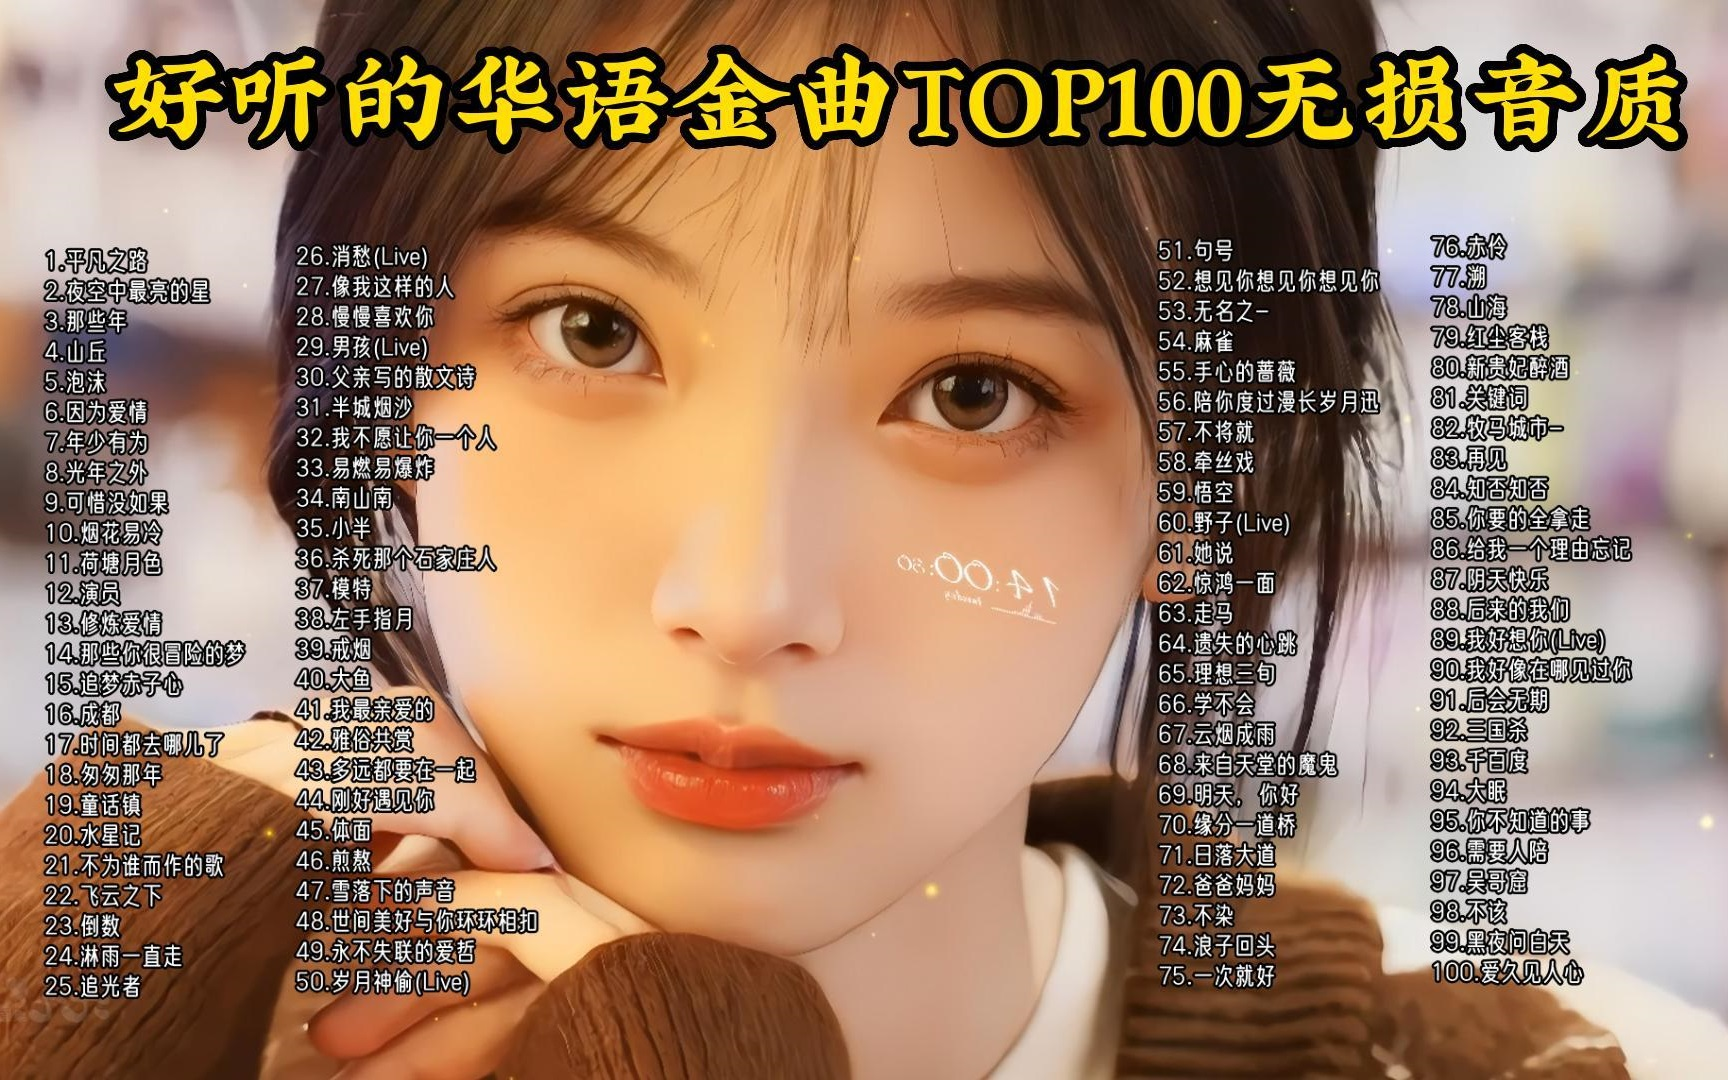 【听歌向 华语流行歌曲】精选100首TOP经典歌曲分享，首首动听，值得收藏！